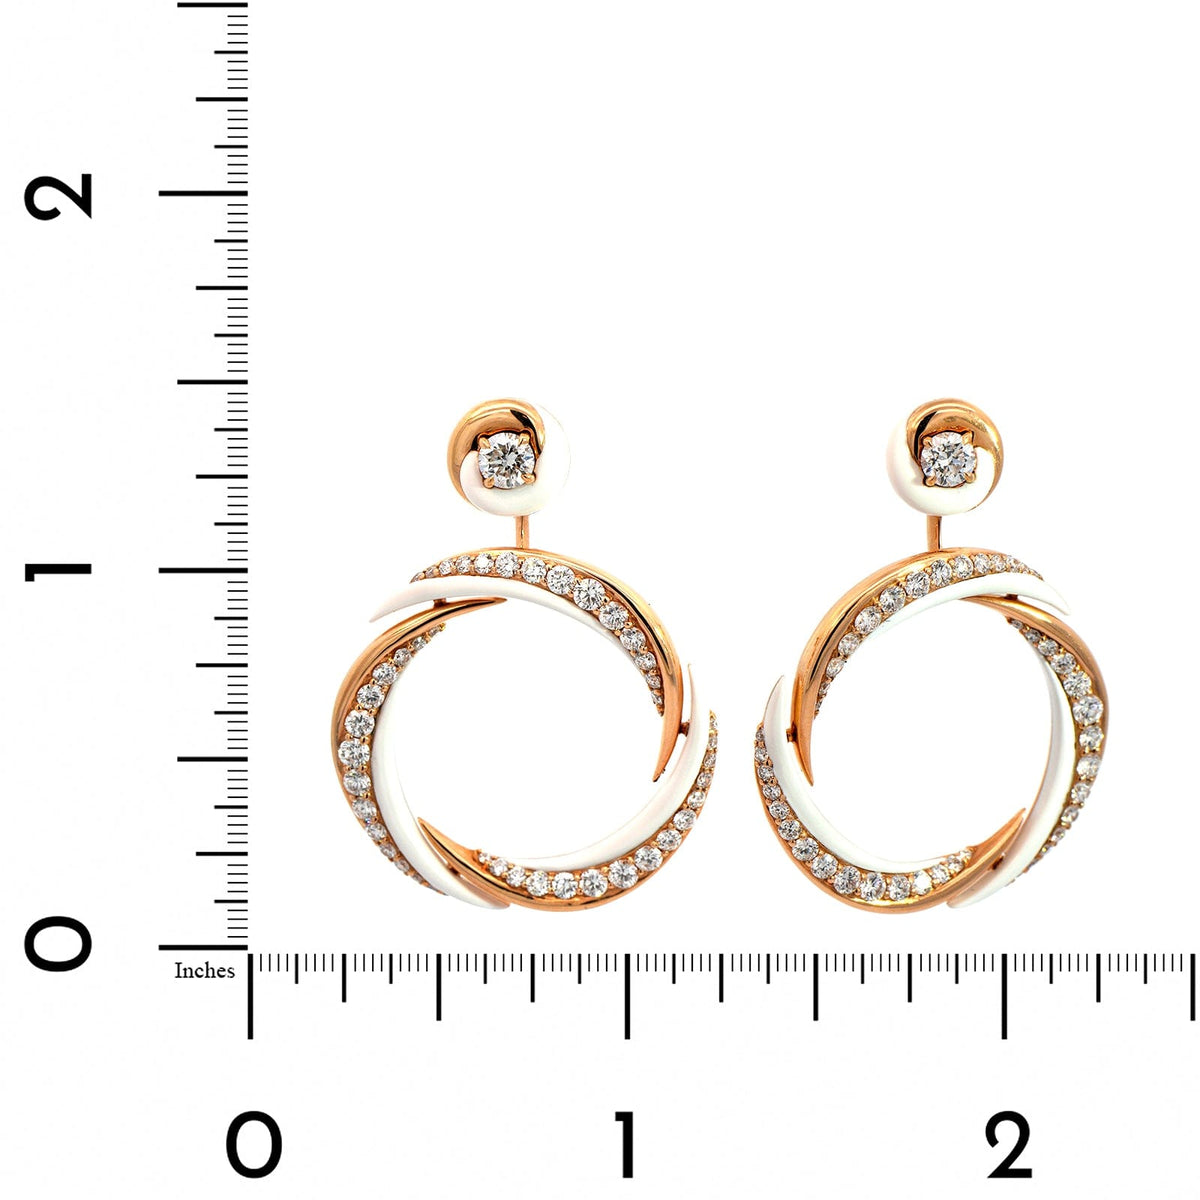 Etho Maria 18K Rose Gold Diamond and White Ceramic Hoop Earrings – Long ...